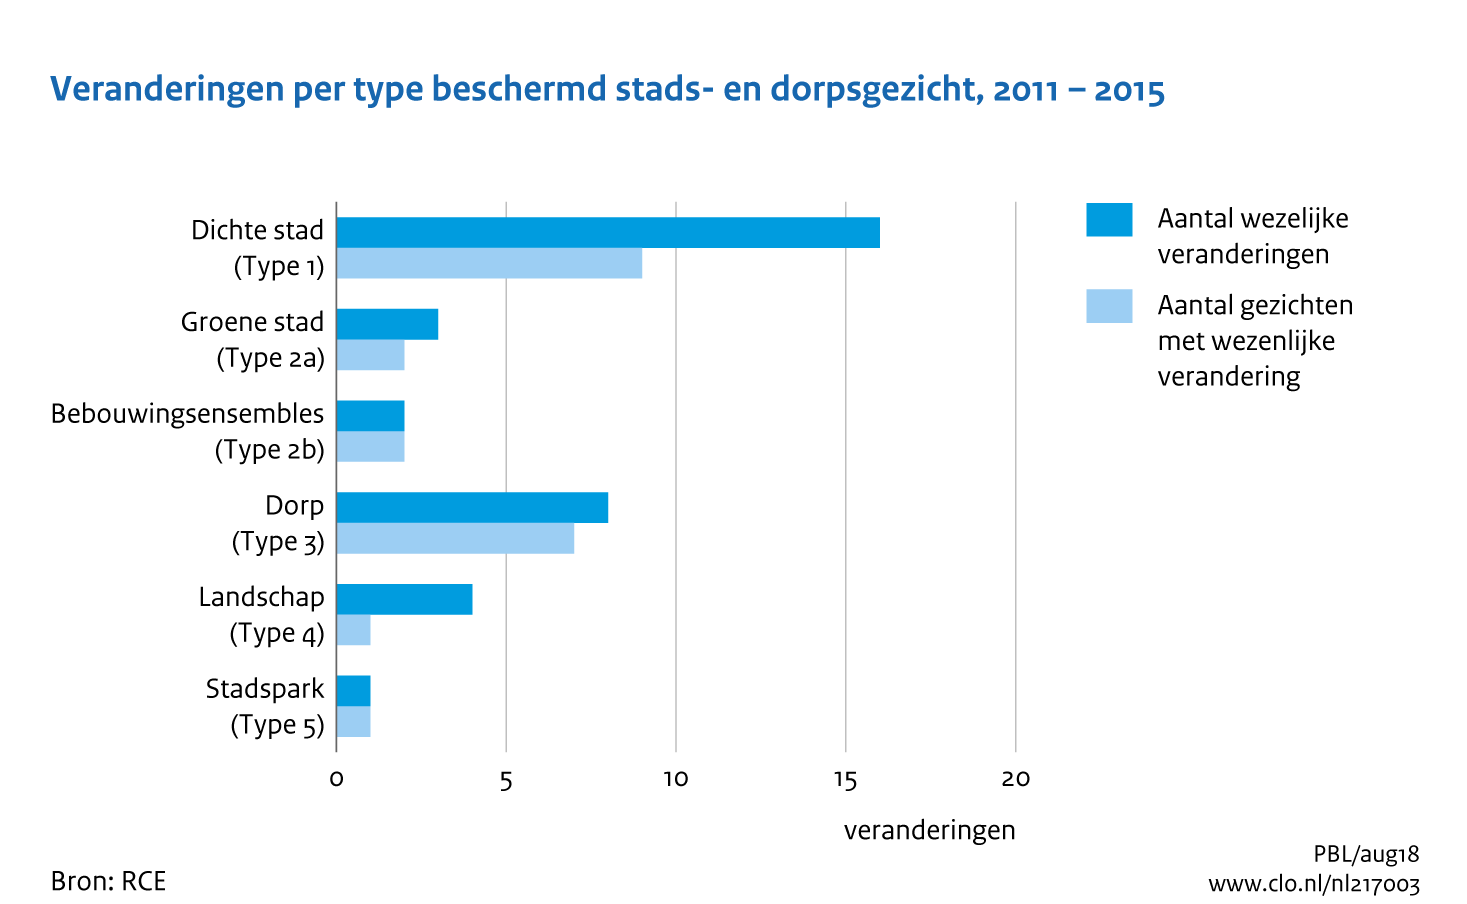 Figuur Veranderingen per type beschermd stads- en dorpsgezicht, 2011-2015. In de rest van de tekst wordt deze figuur uitgebreider uitgelegd.